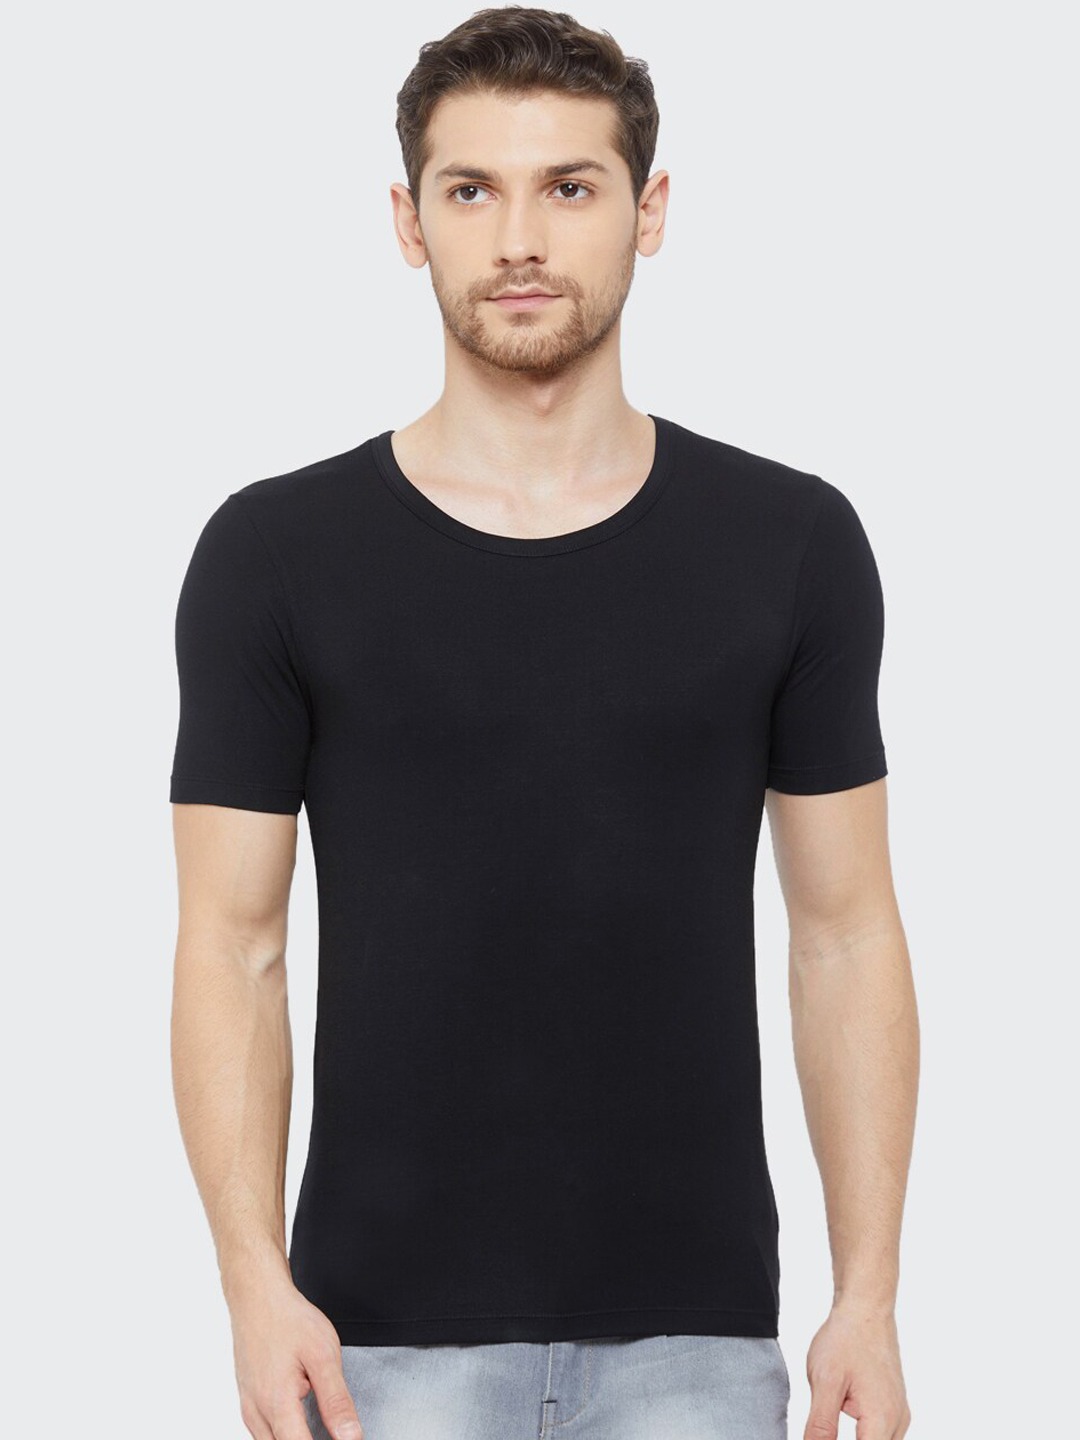 Clothing Innerwear Vests | Almo Wear Men Black Micro Round Neck Undershirt Vest - PR06701